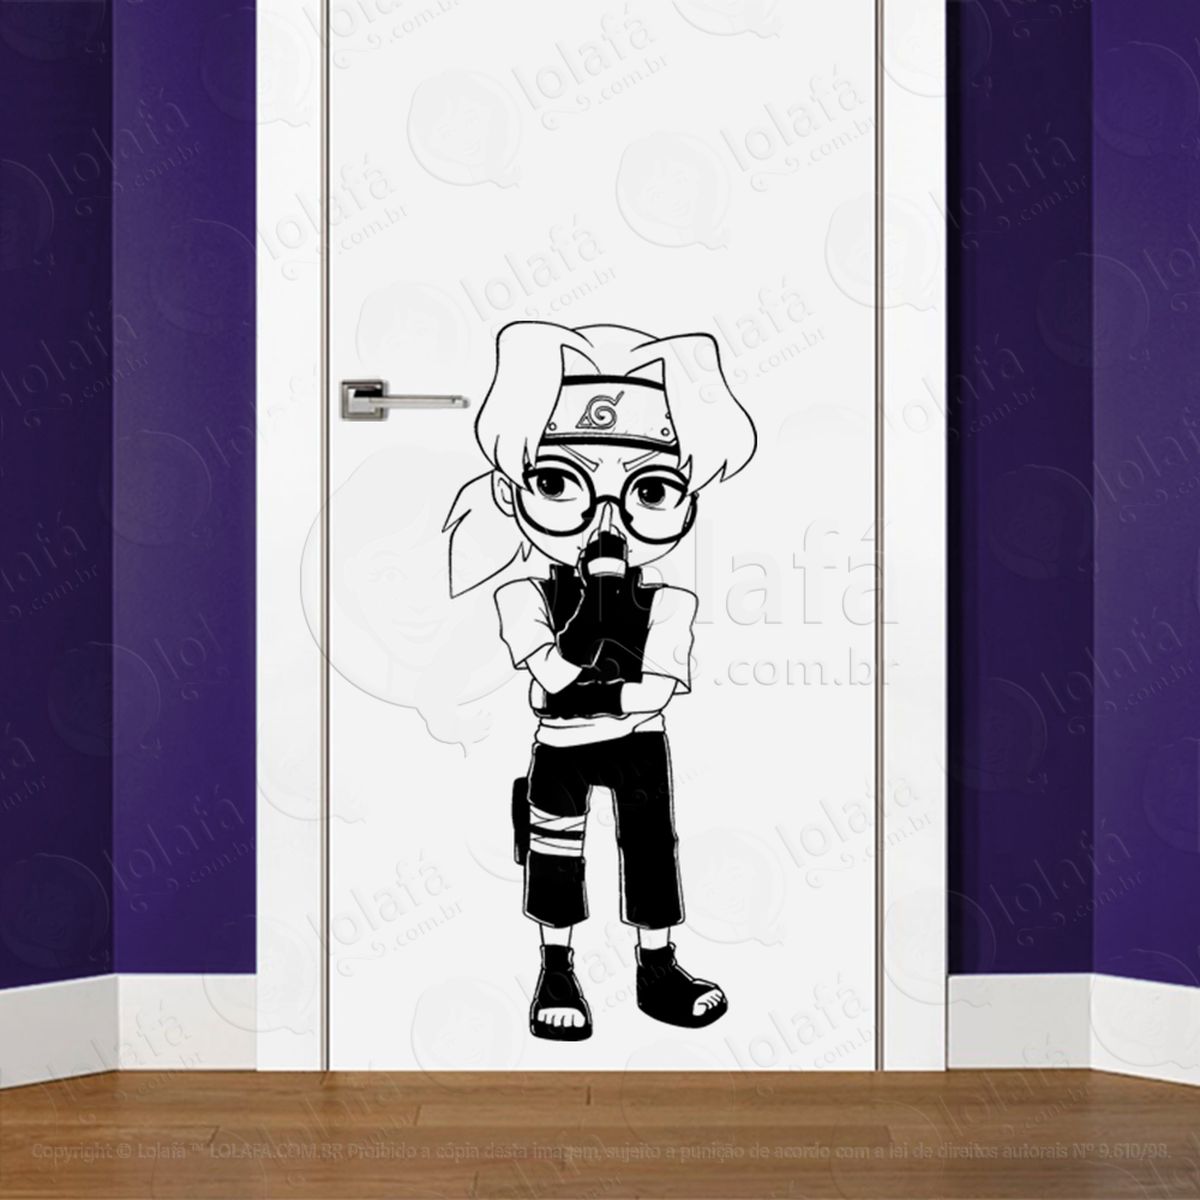 kabuto yakushi adesivo de parede para quarto, porta e vidro - mod:185